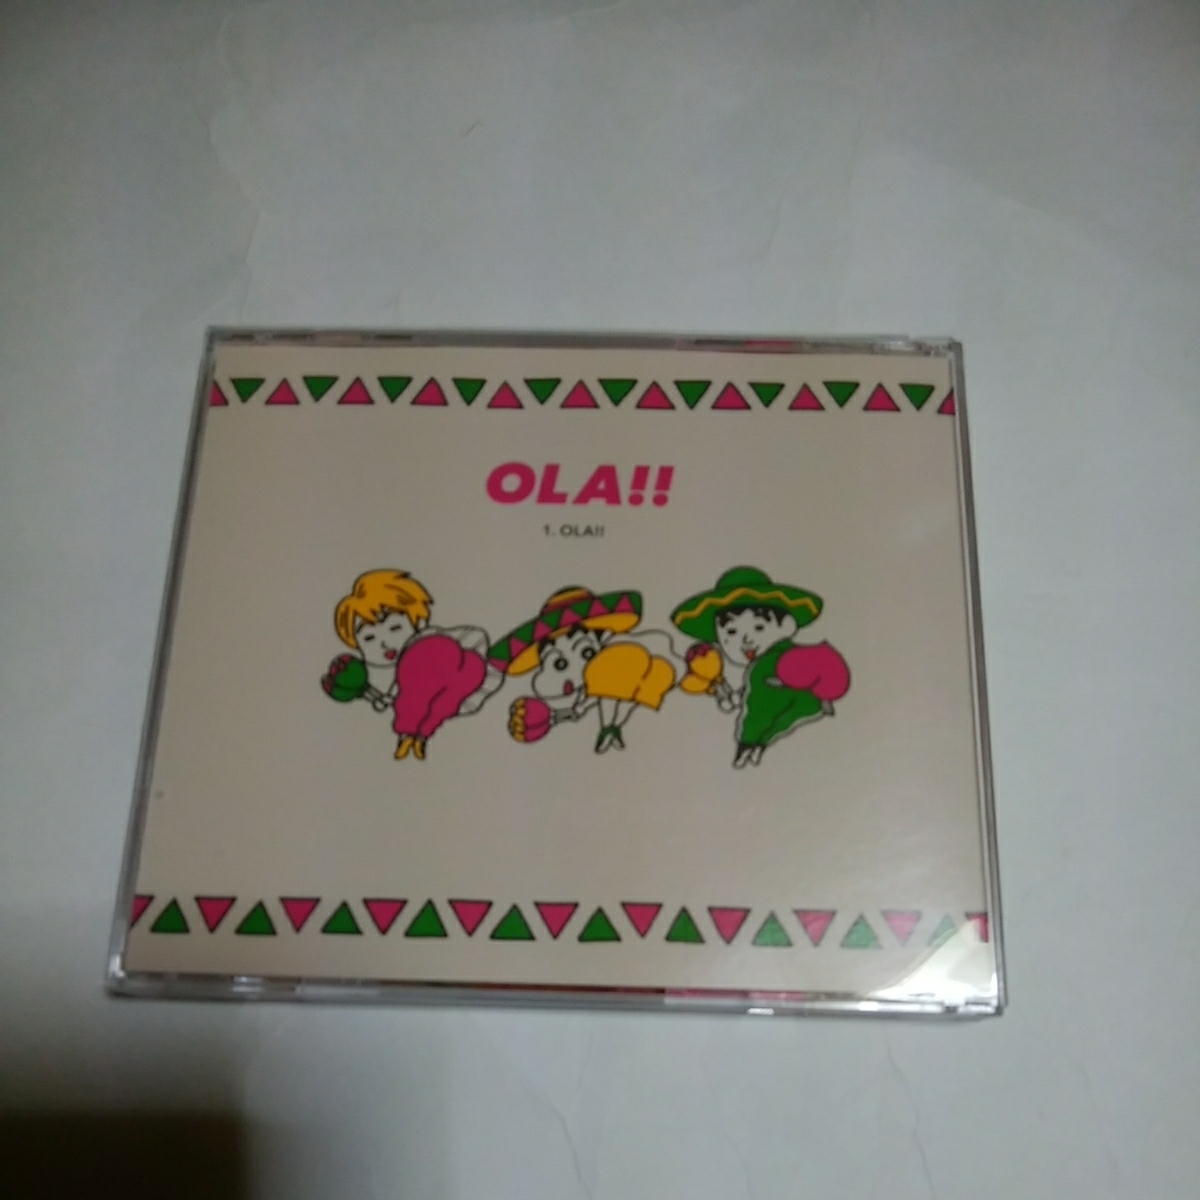 ゆず ola 限定盤 クレヨンしんちゃん盤 特典付き 帯付き シングル cd レア盤